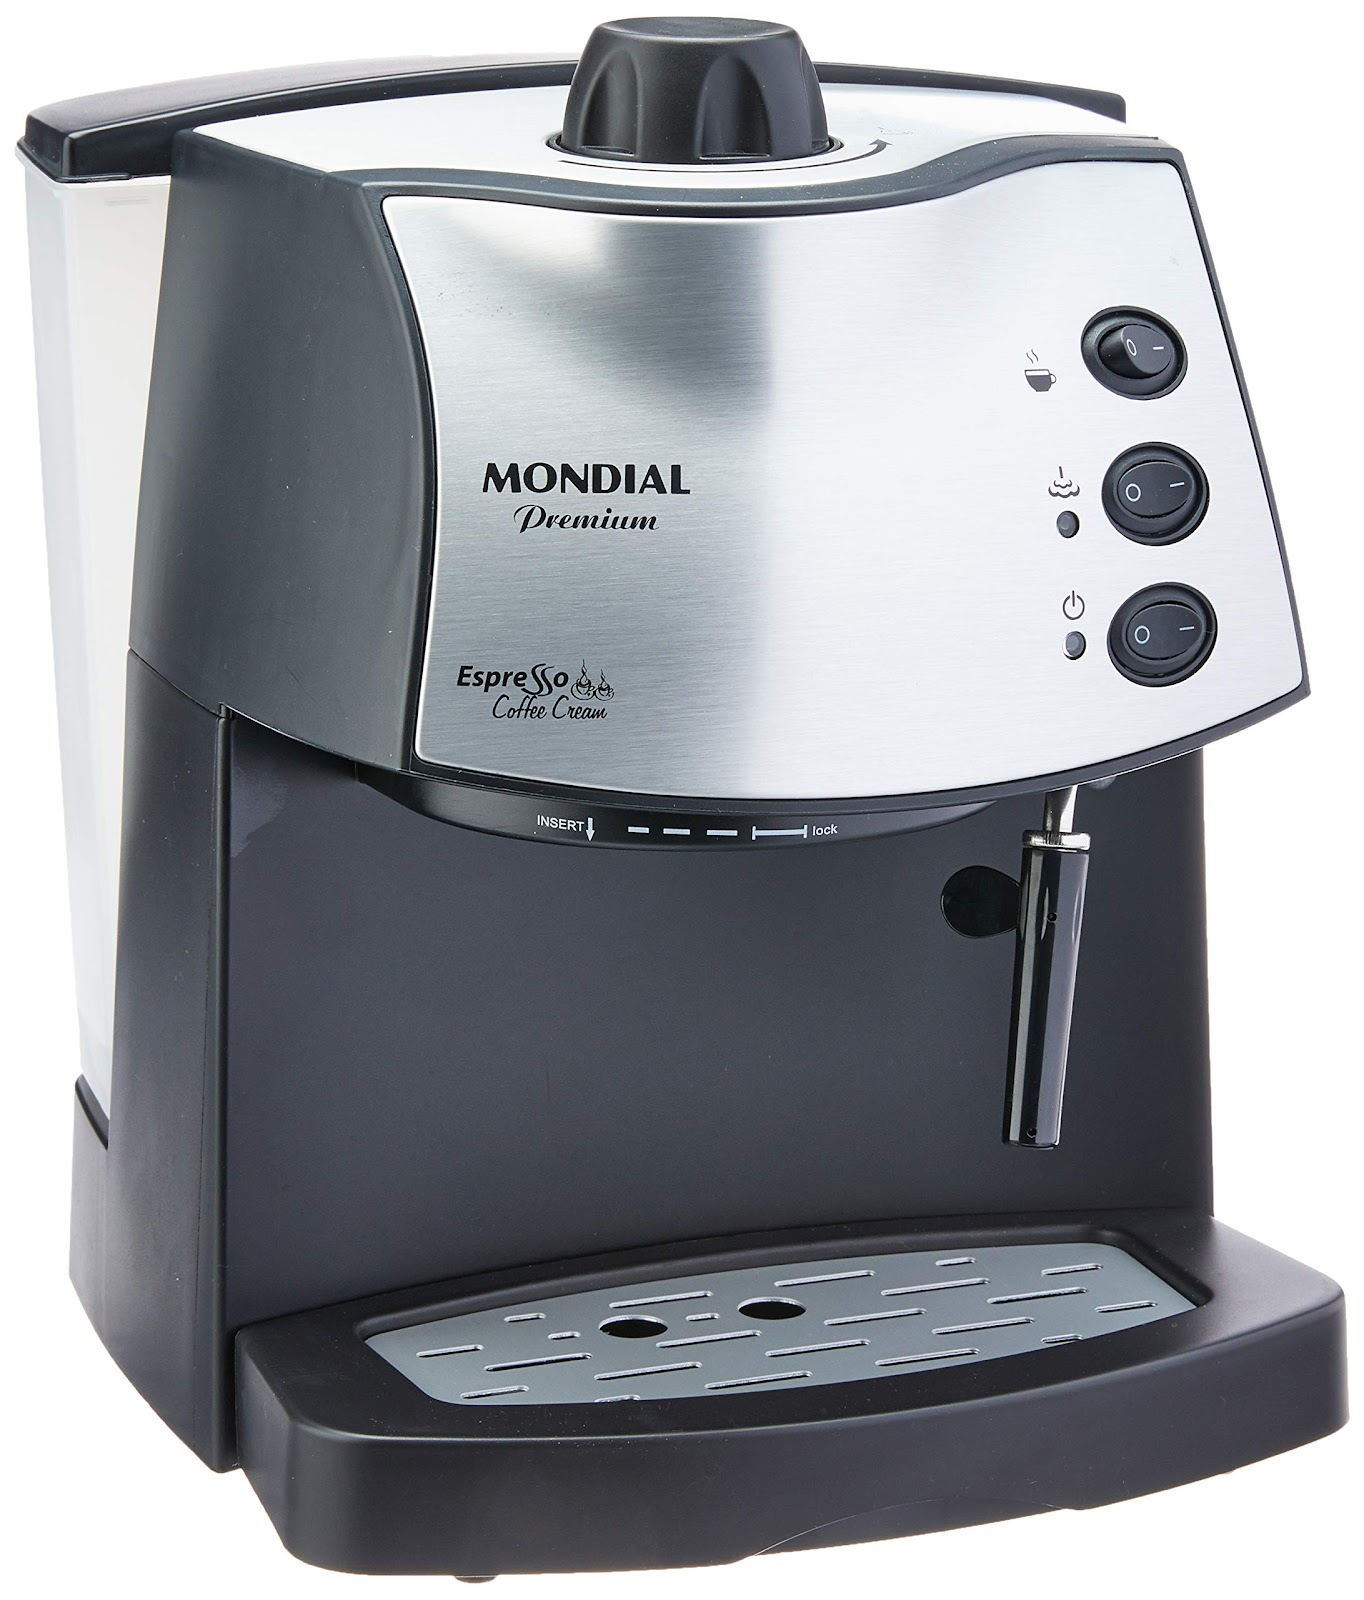 Máquina de Café Espresso Coffee Cream, Mondial, Preto/Inox, 800W, 110V - C-08 110 Volts